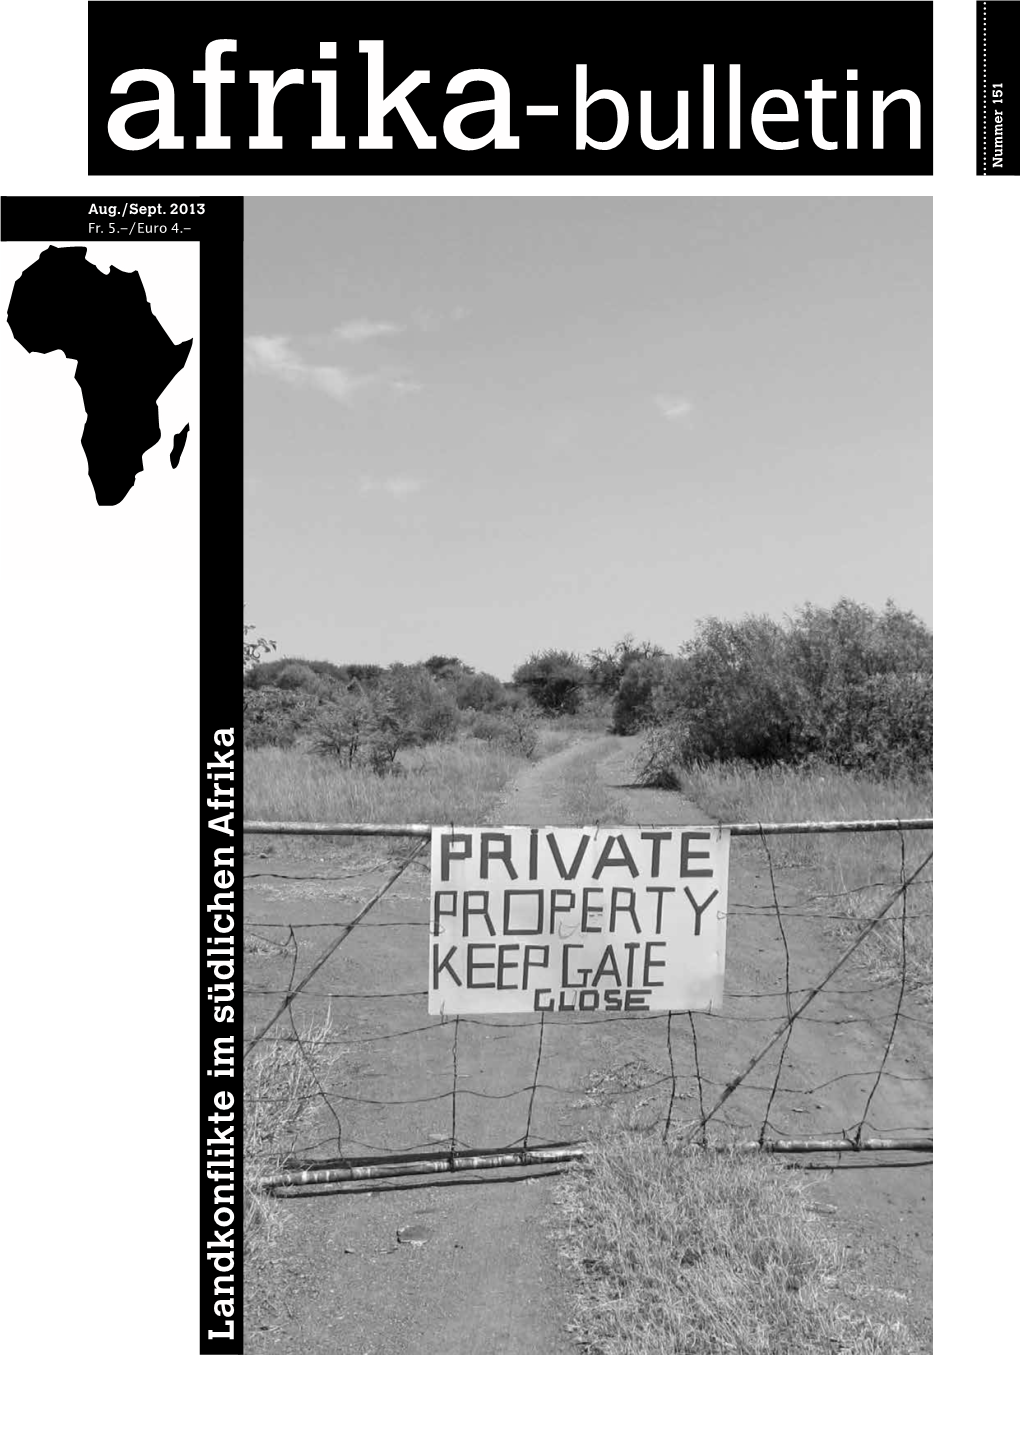 Landreform in Südafrika Neuauflage Der Landrückerstattung Setzt Falsche Akzente